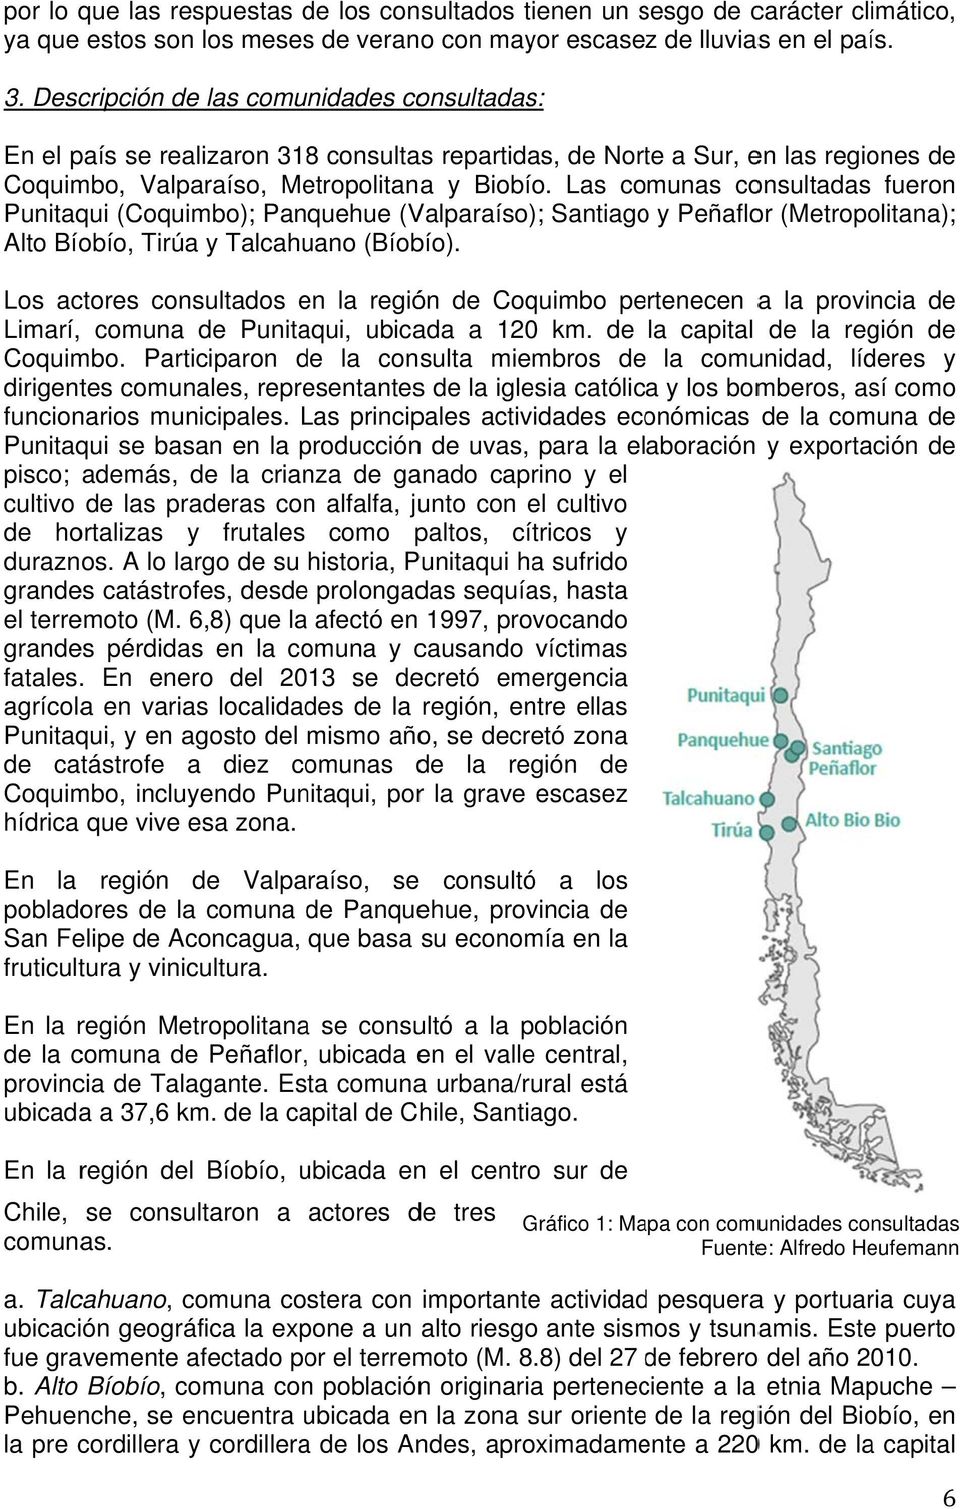 Las comunas consultadas fueron Punitaqui (Coquimbo); Panquehue (Valparaíso); Santiagoo y Peñaflor (Metropolitana); Alto Bíobío, Tirúa y Talcahuano (Bíobío).